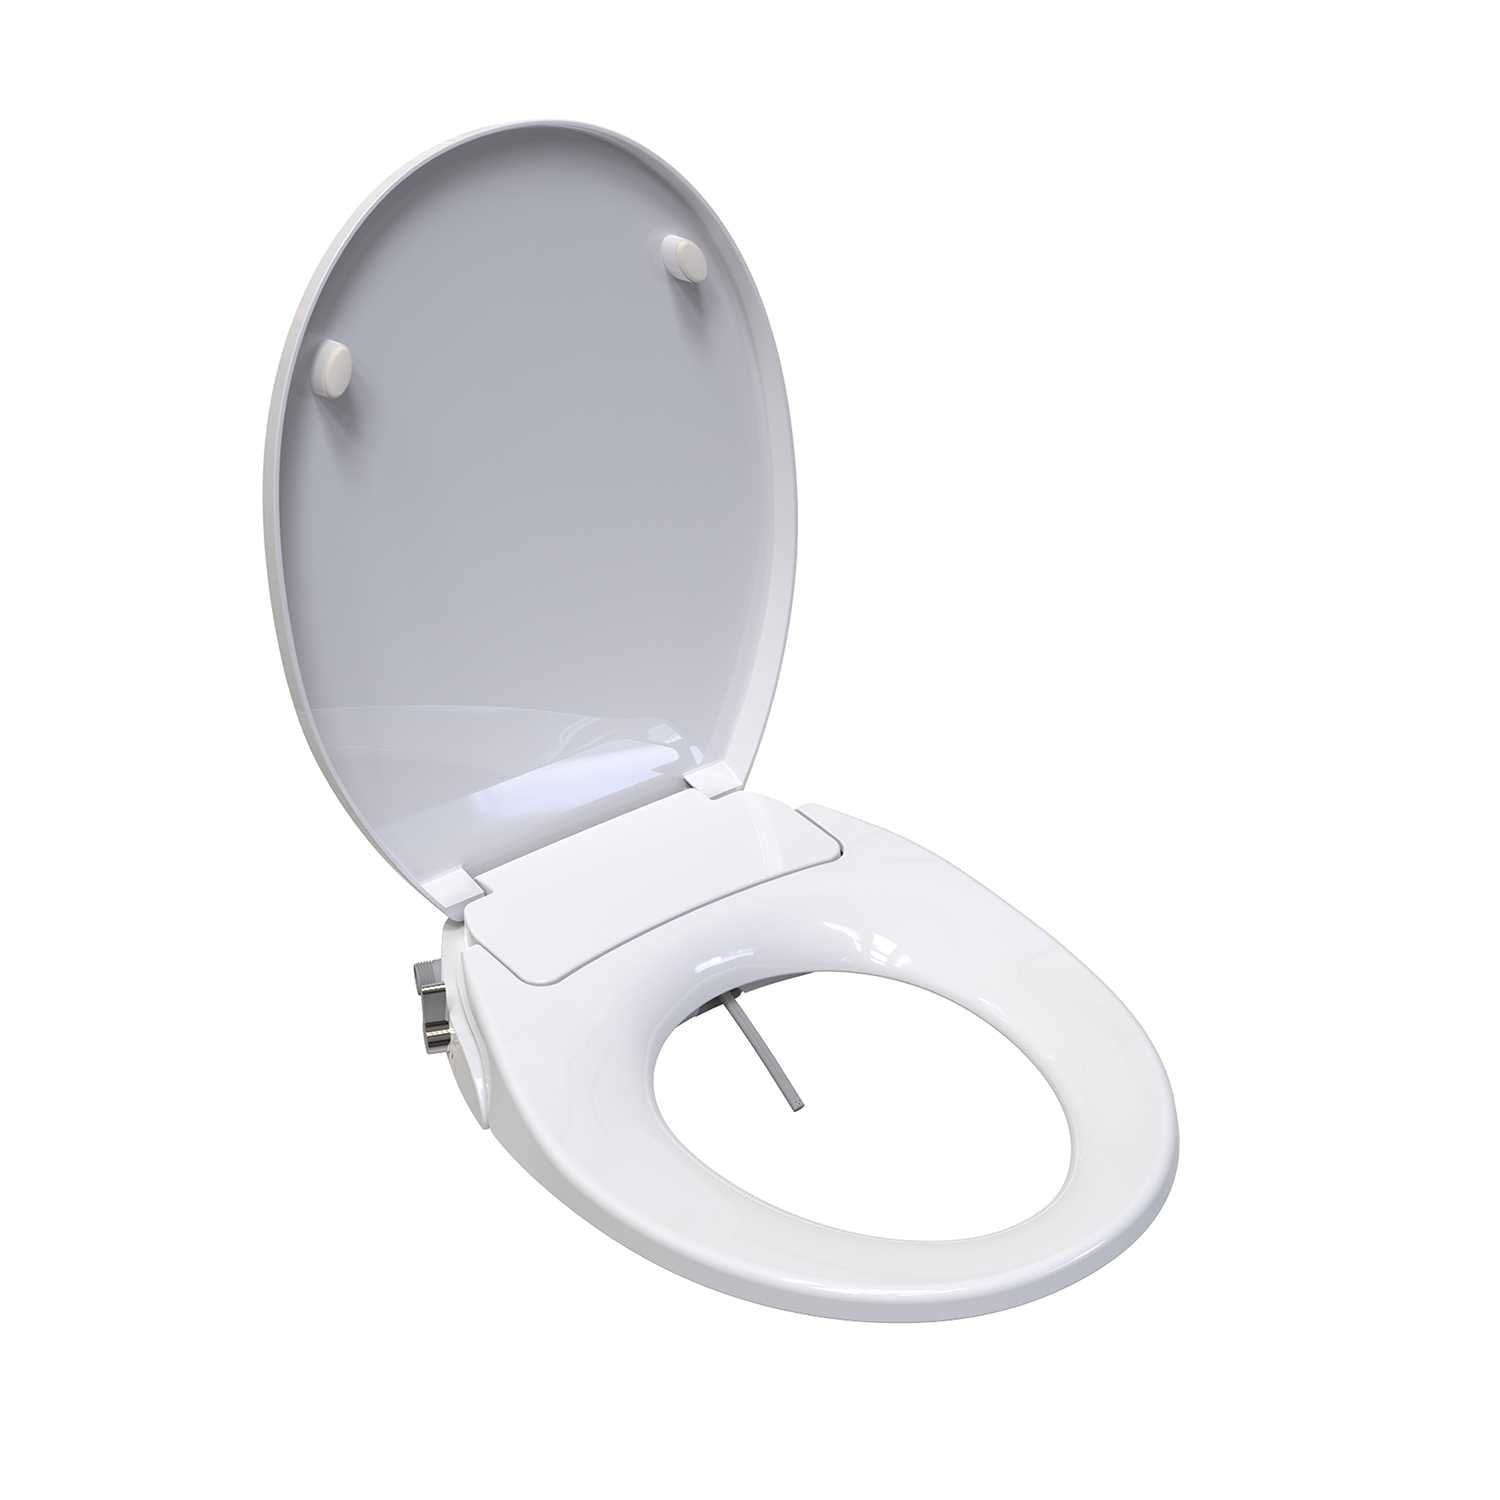 Saniwise Haun Round Bidet Toilet Seat